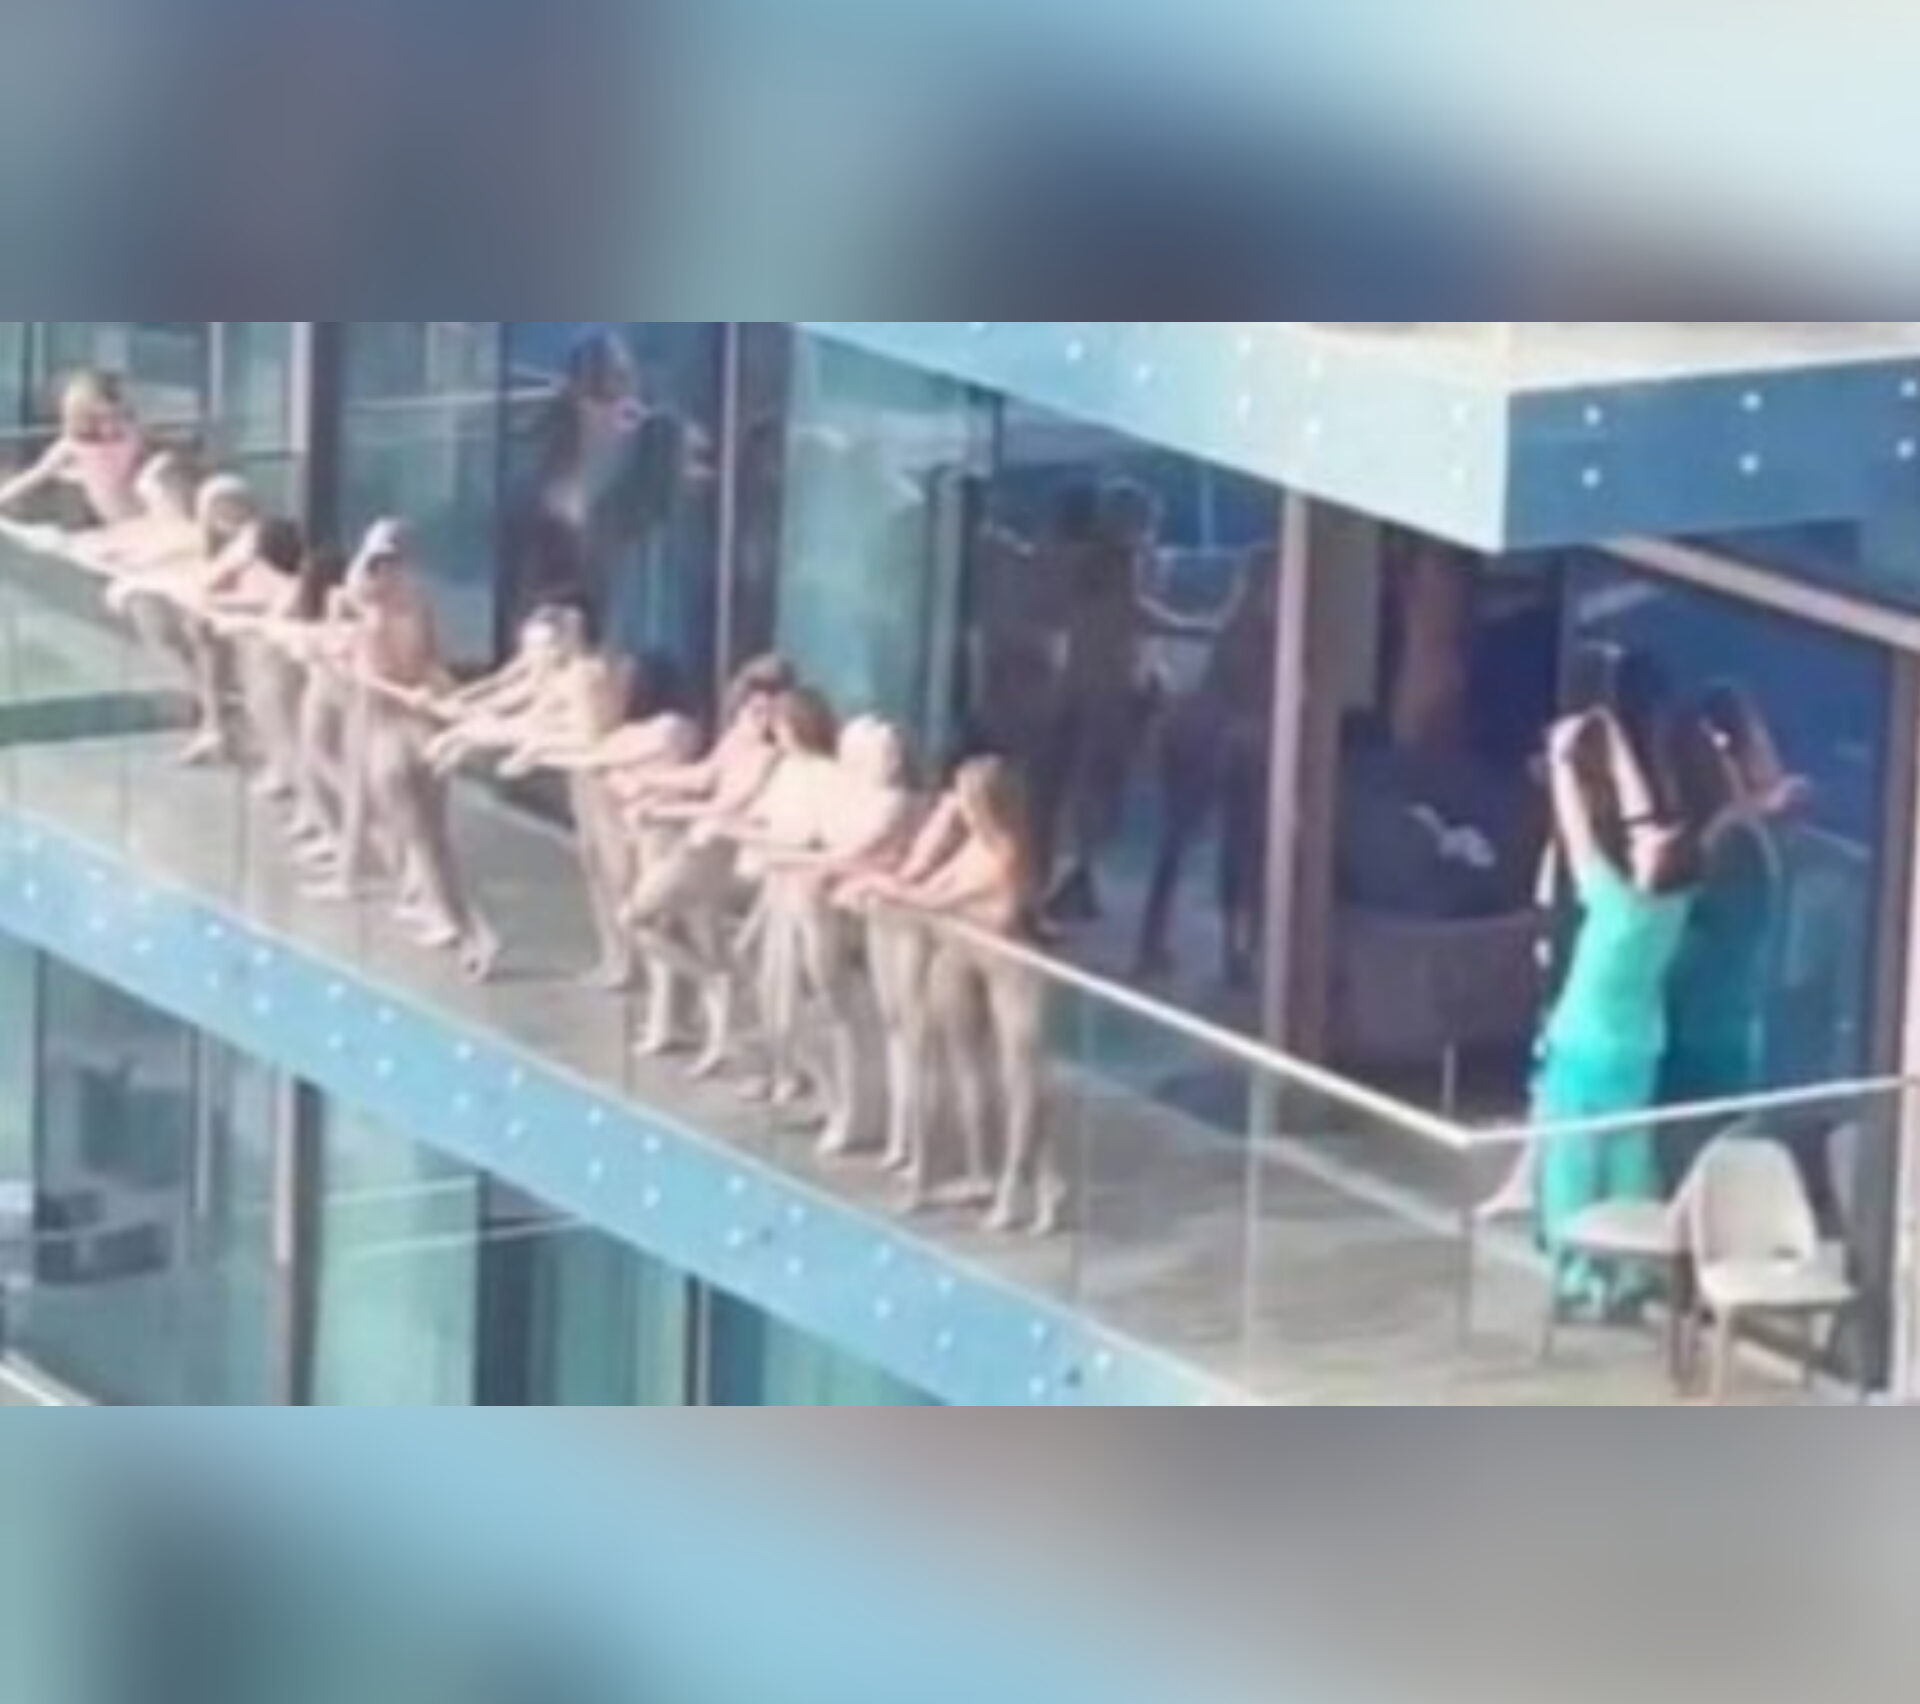 Mulheres são presas após posarem nuas em varanda de prédio em Dubai